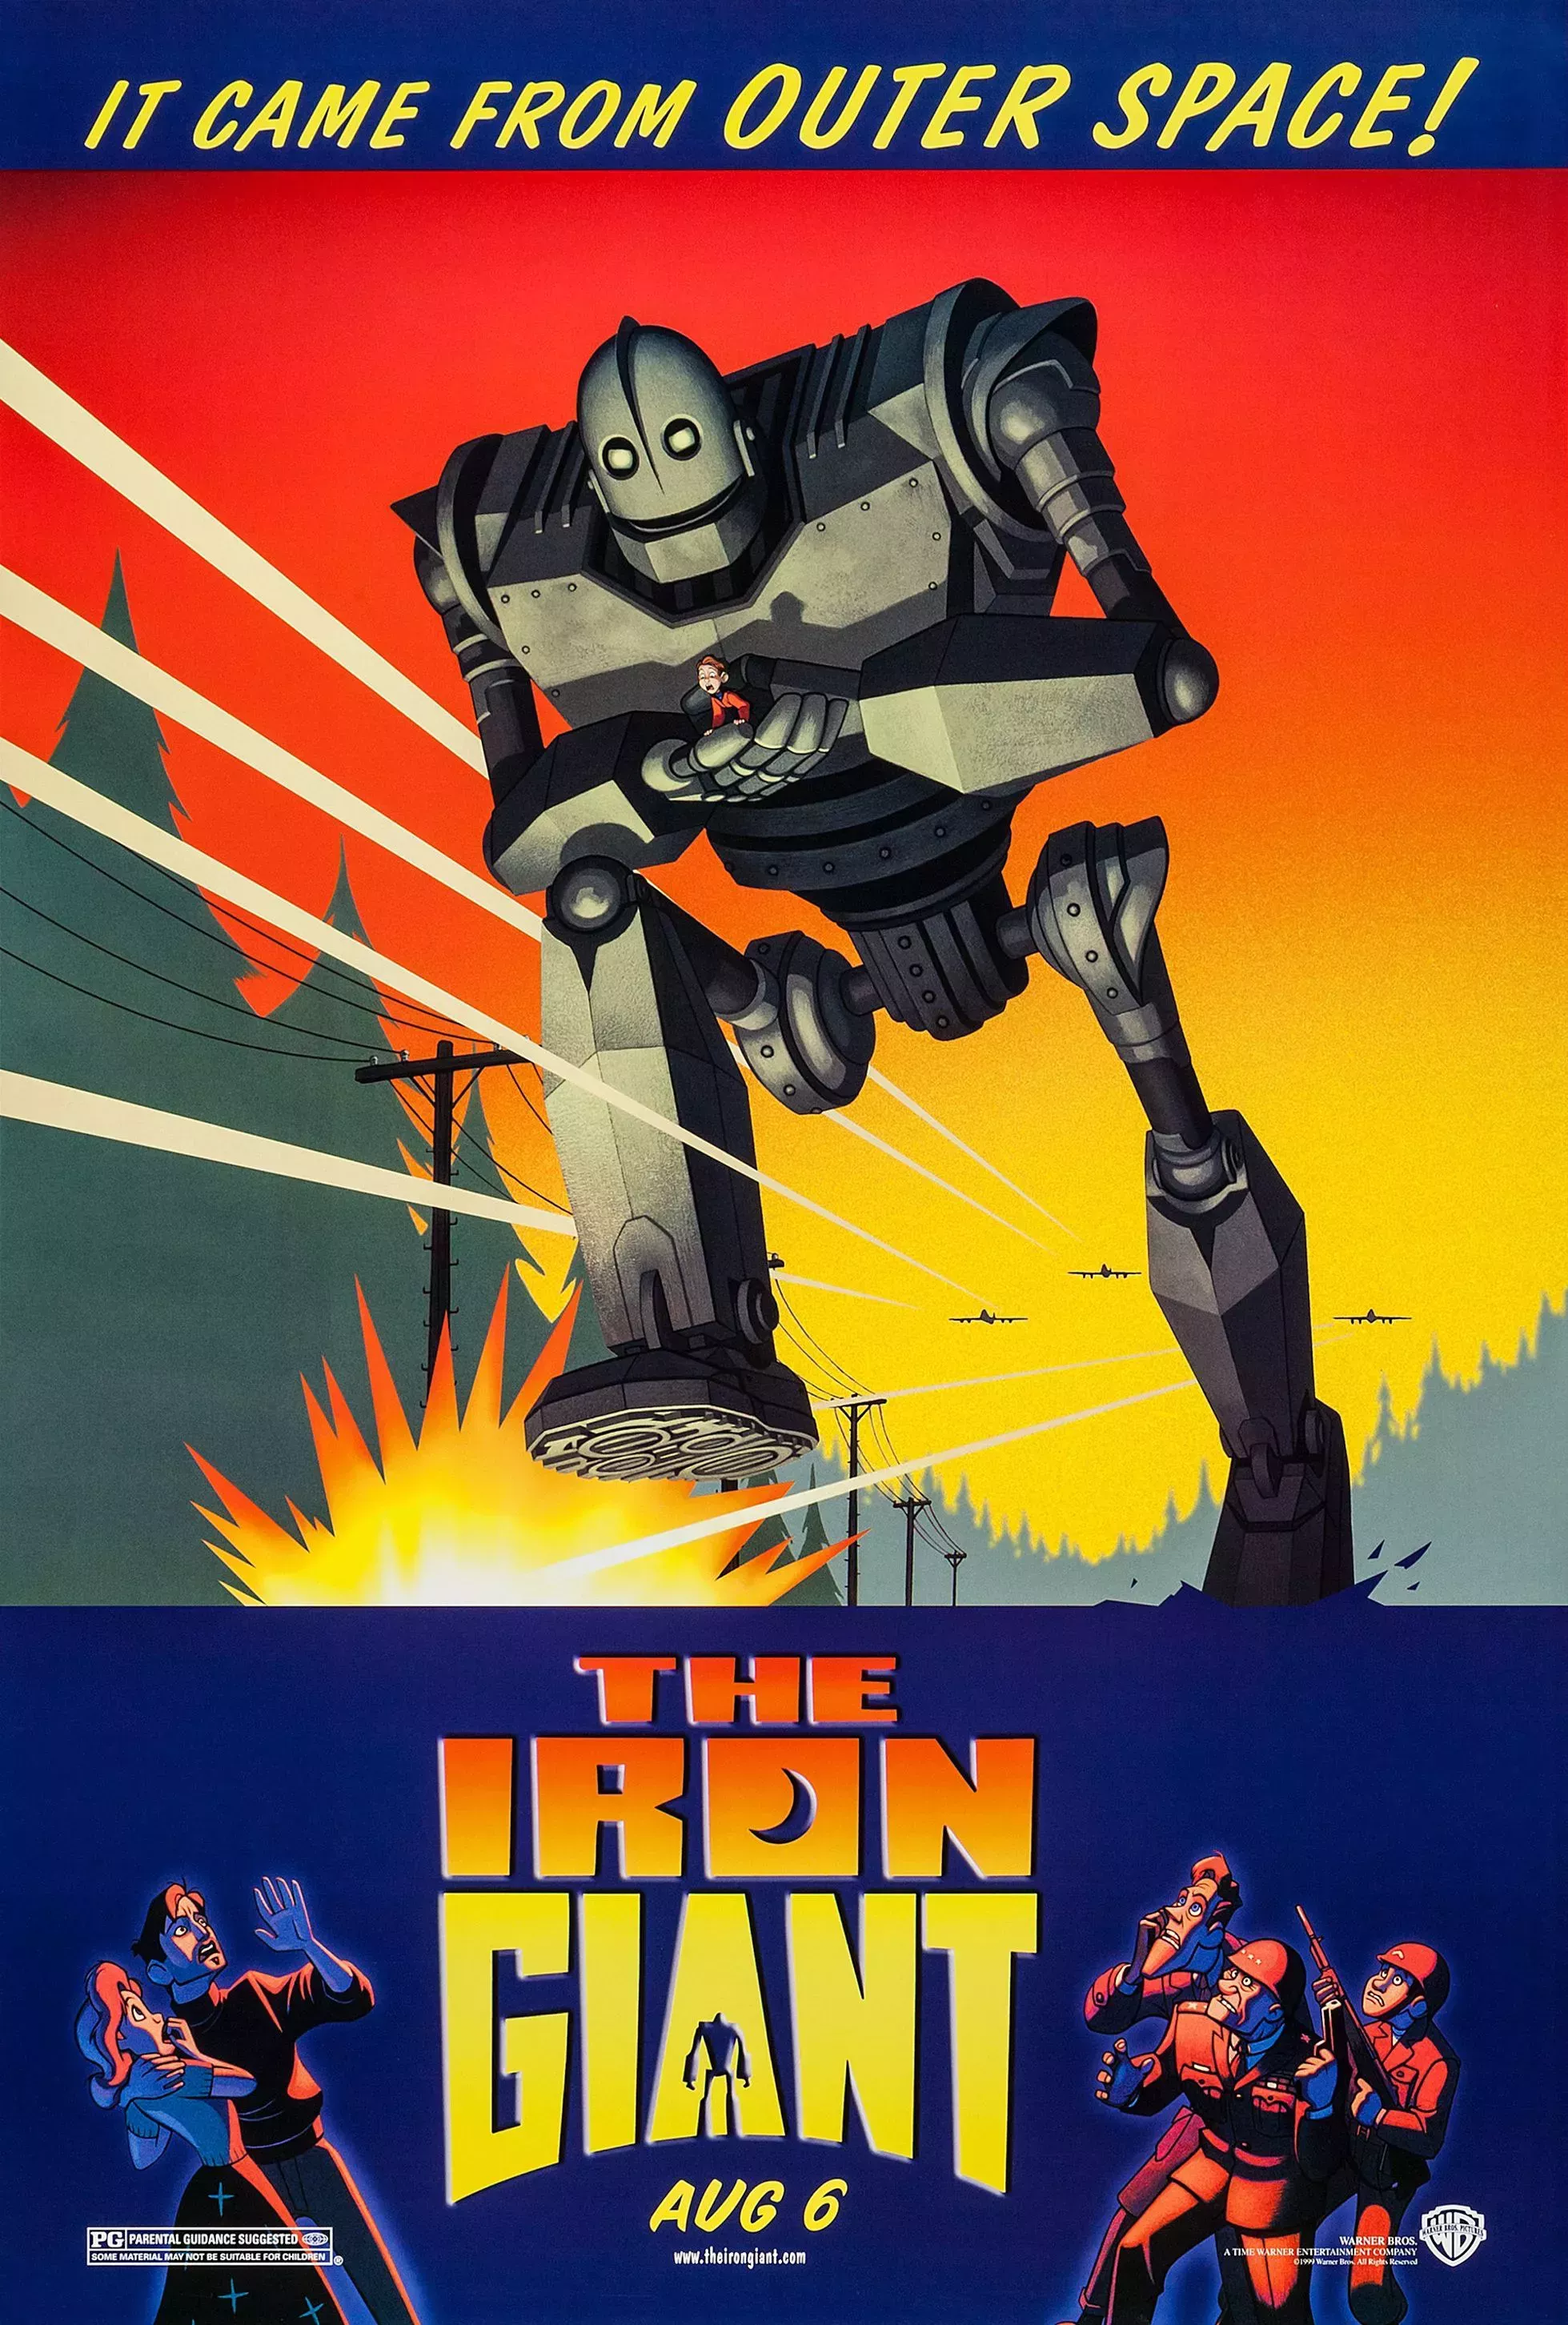 The Iron Giant Film Poster